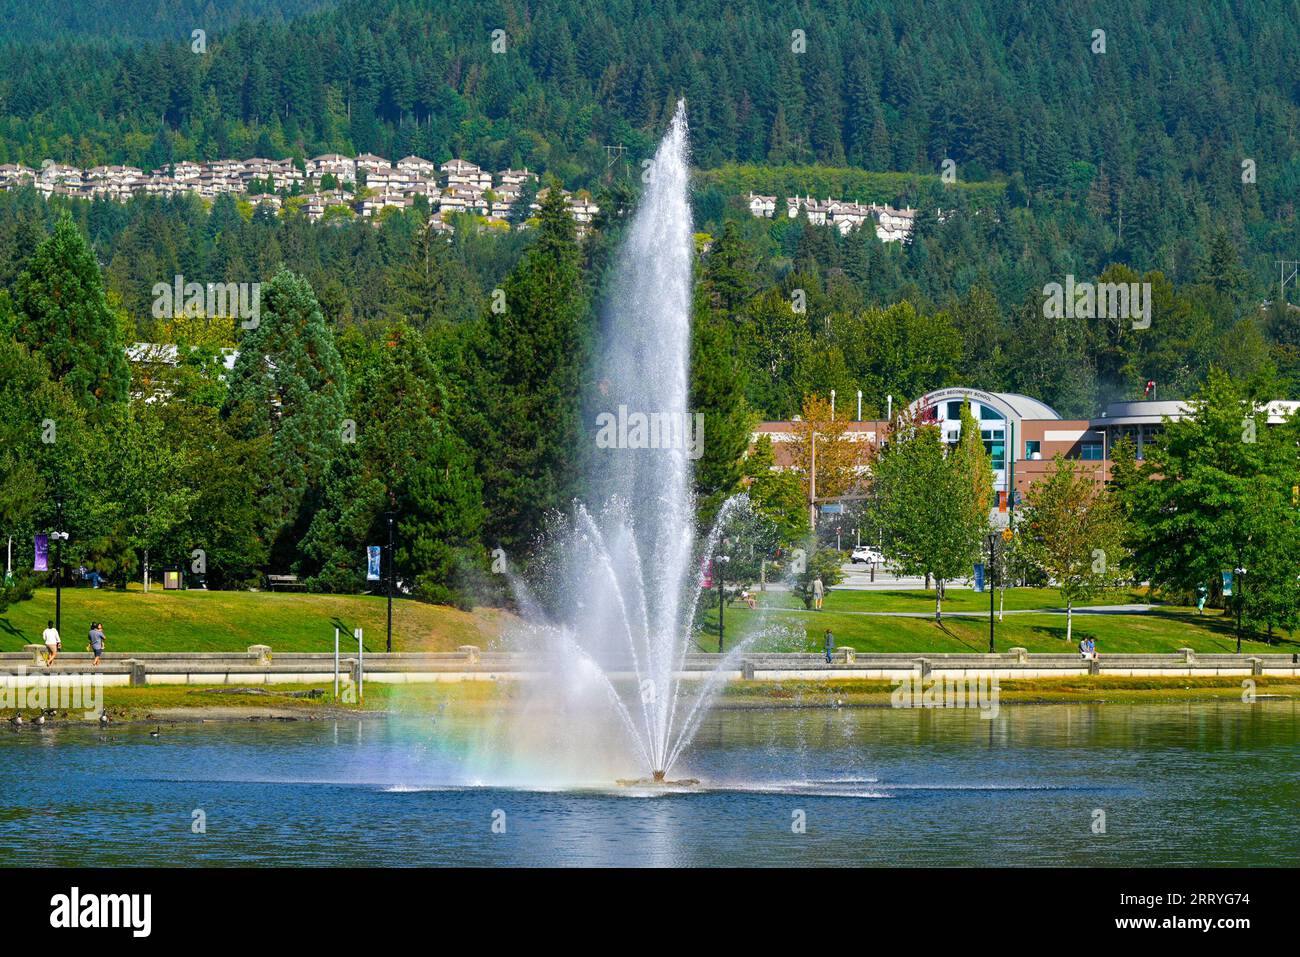 Fontana, Lafarge lago, centro città Park, Coquitlam, British Columbia, Canada. Foto Stock